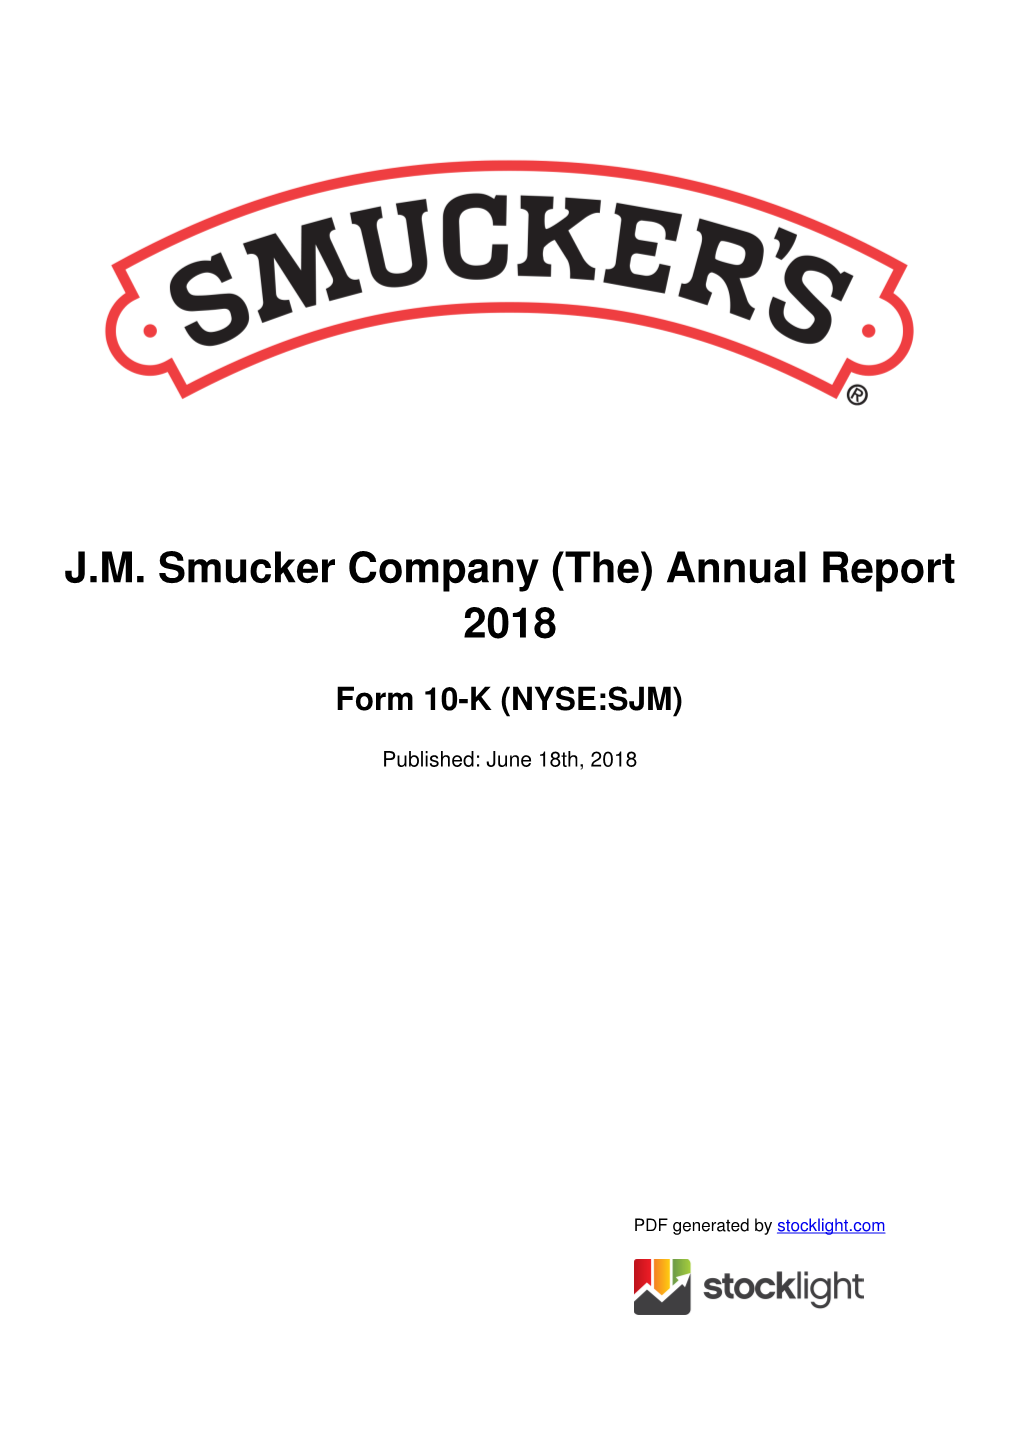 JM Smucker Company (The) Annual Report 2018